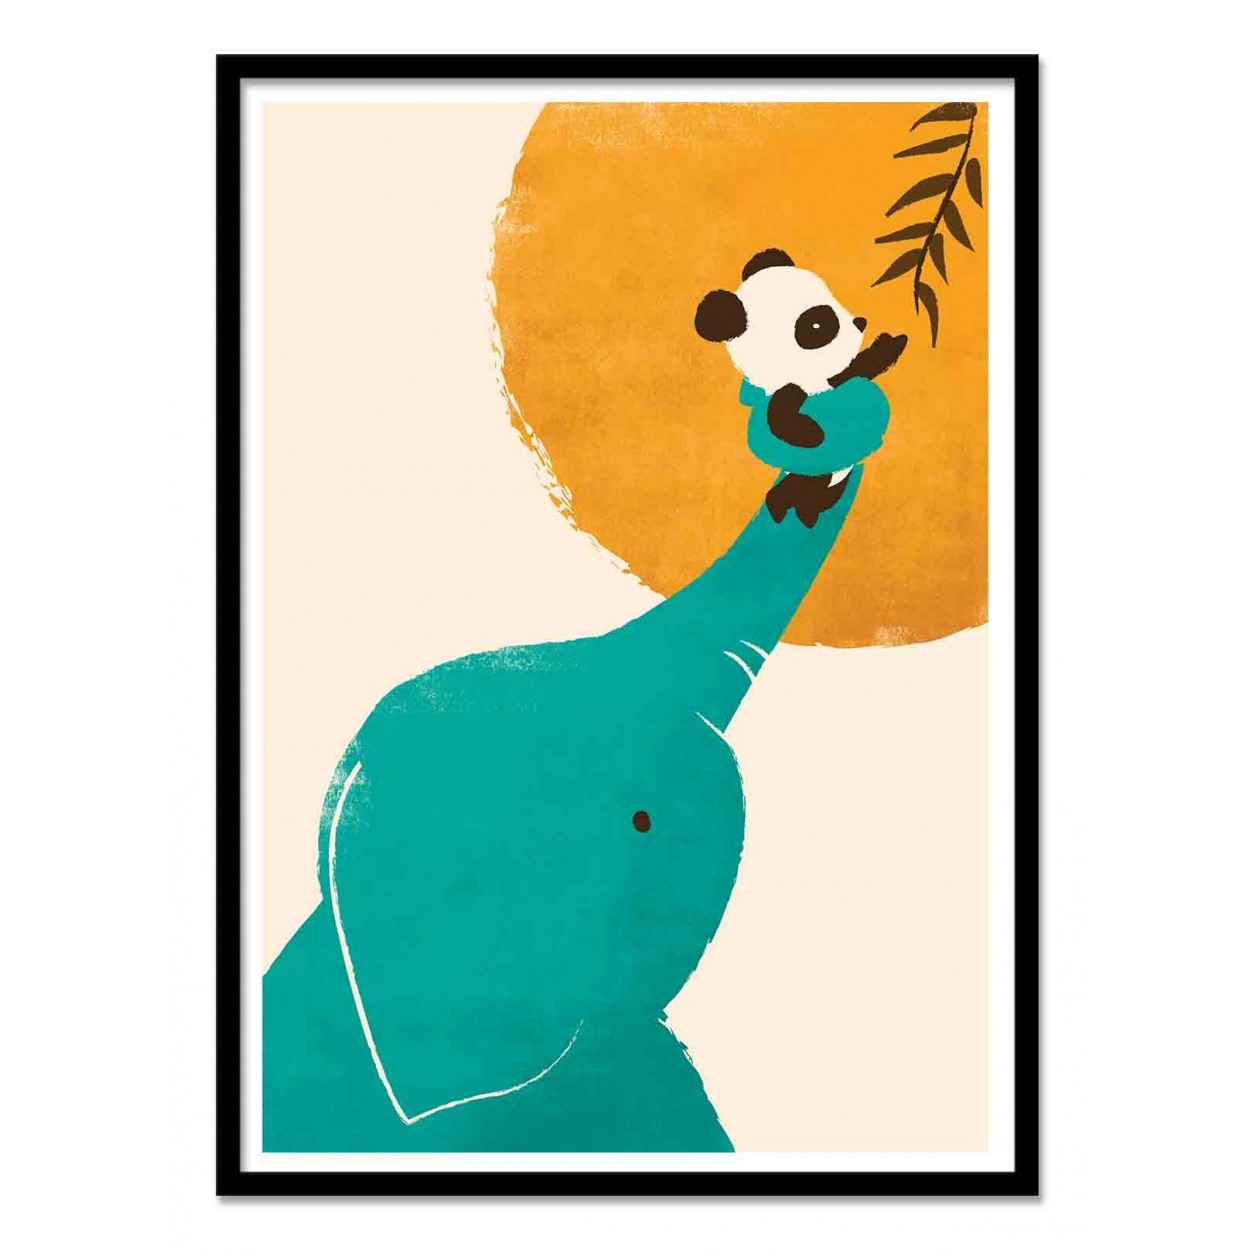 Affiche d'art pour enfants, bébés - Panda's little helper, par Jay